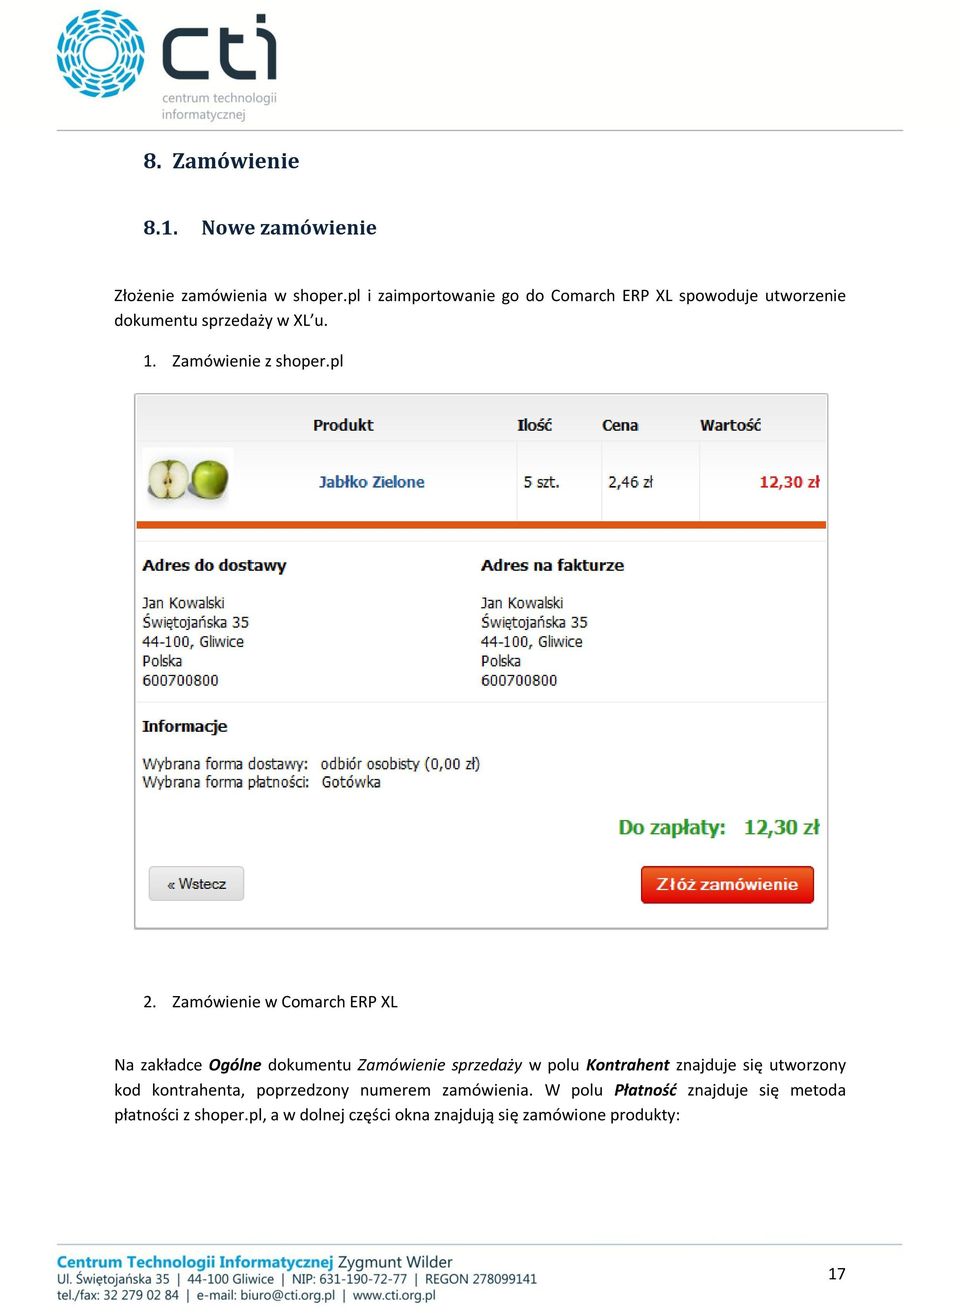 pl 2. Zamówienie w Comarch ERP XL Na zakładce Ogólne dokumentu Zamówienie sprzedaży w polu Kontrahent znajduje się